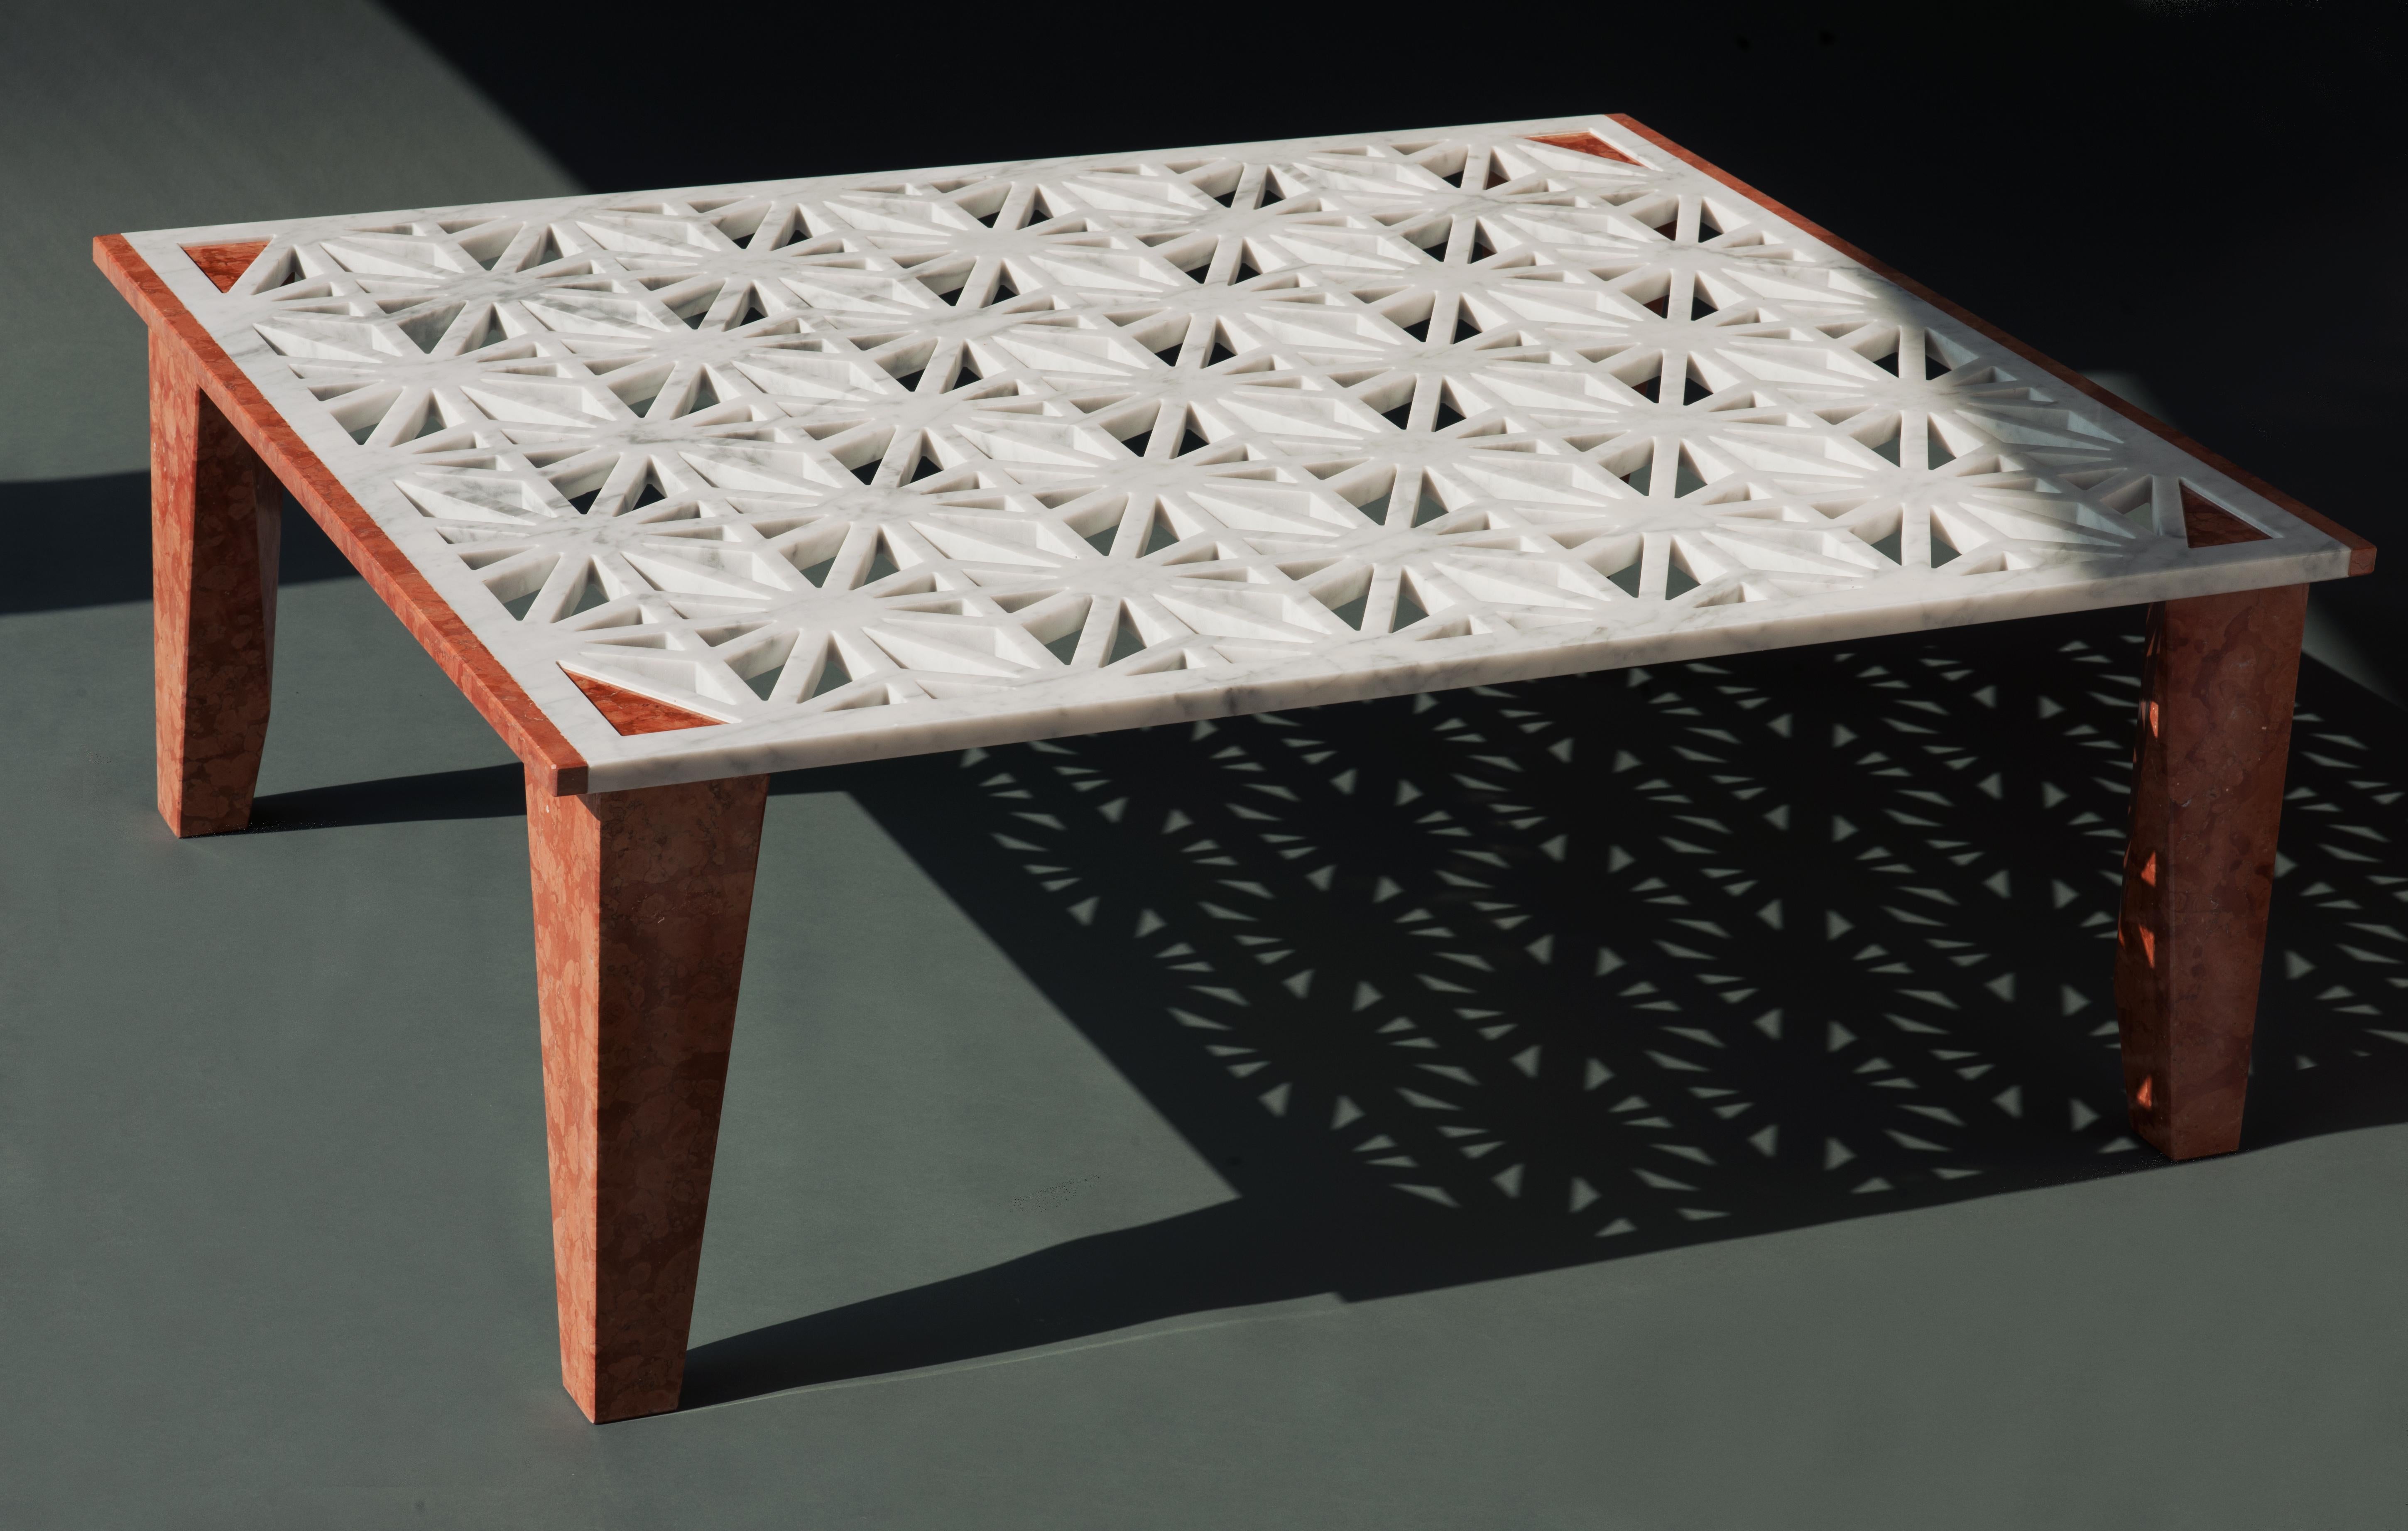 Réalisée en collaboration avec l'architecte Stefano Calchi Novati, Lace est une table basse entièrement en marbre. 

Le plateau de la table est le protagoniste incontesté de cet objet d'aménagement élégant et exclusif. La décoration incrustée du